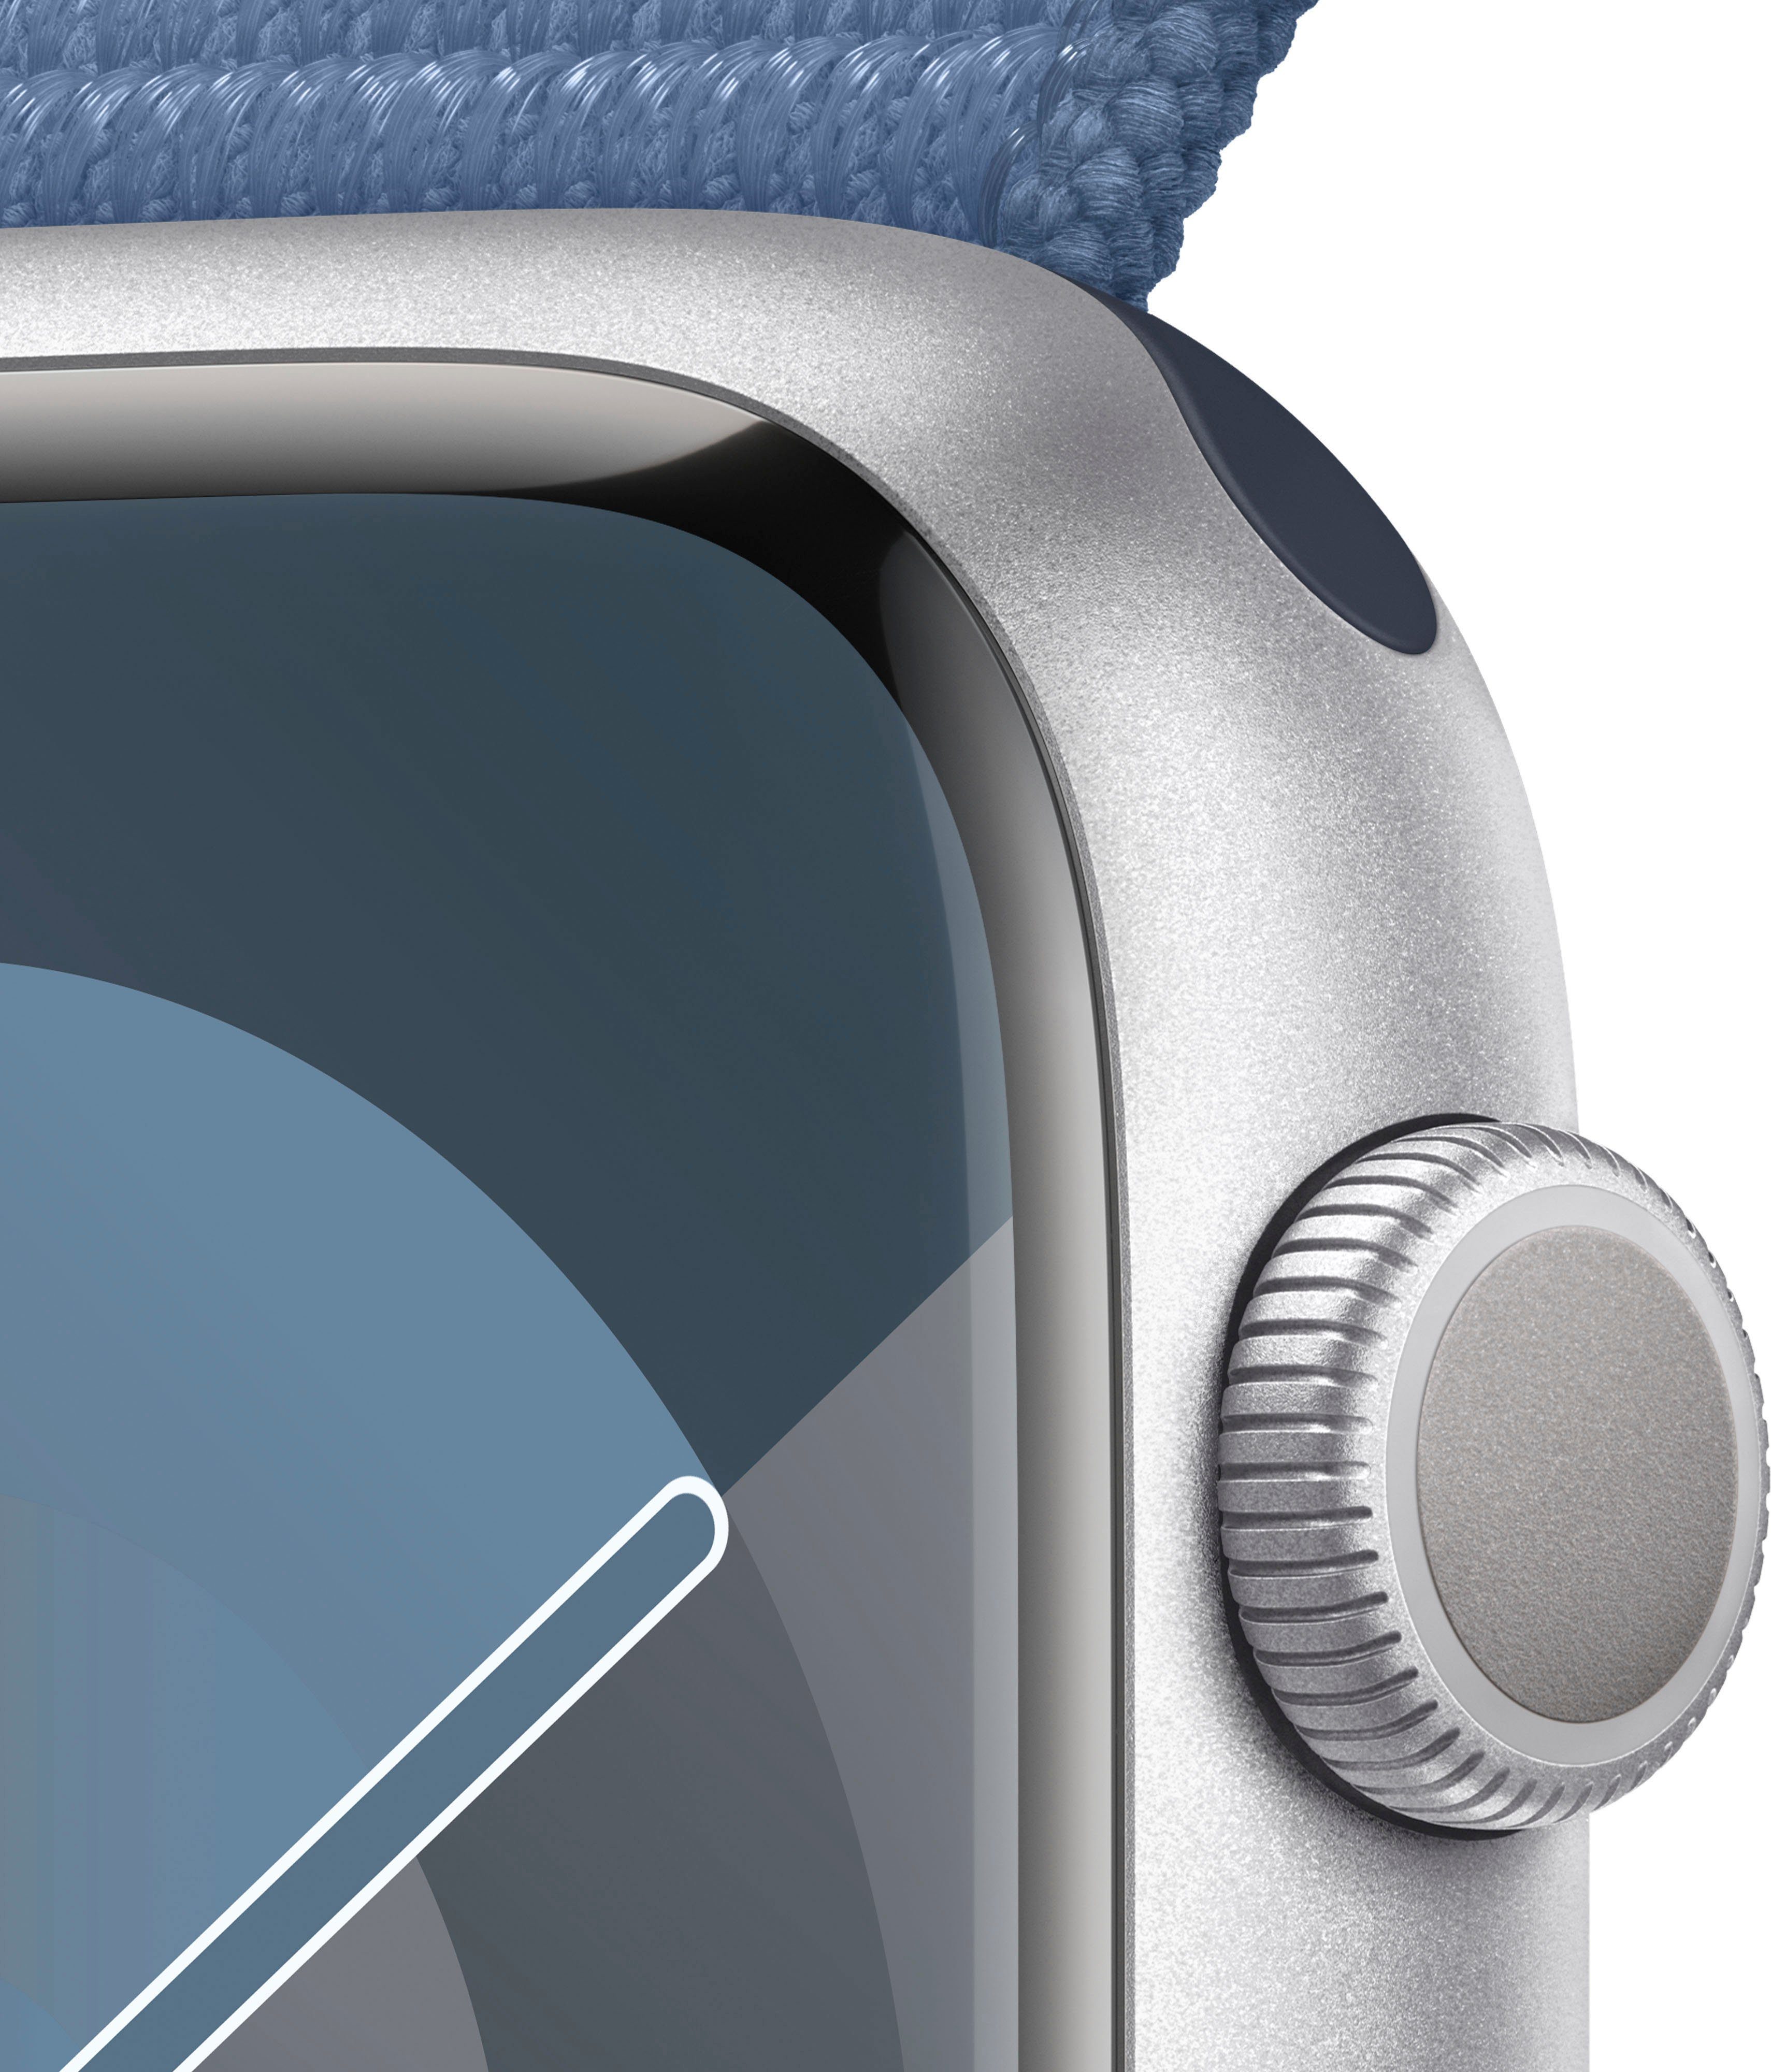 OS Winter 45mm Zoll, GPS Loop Aluminium (4,5 Apple | Sport Blau Smartwatch Watch 9 cm/1,77 Series Watch 10), Silber